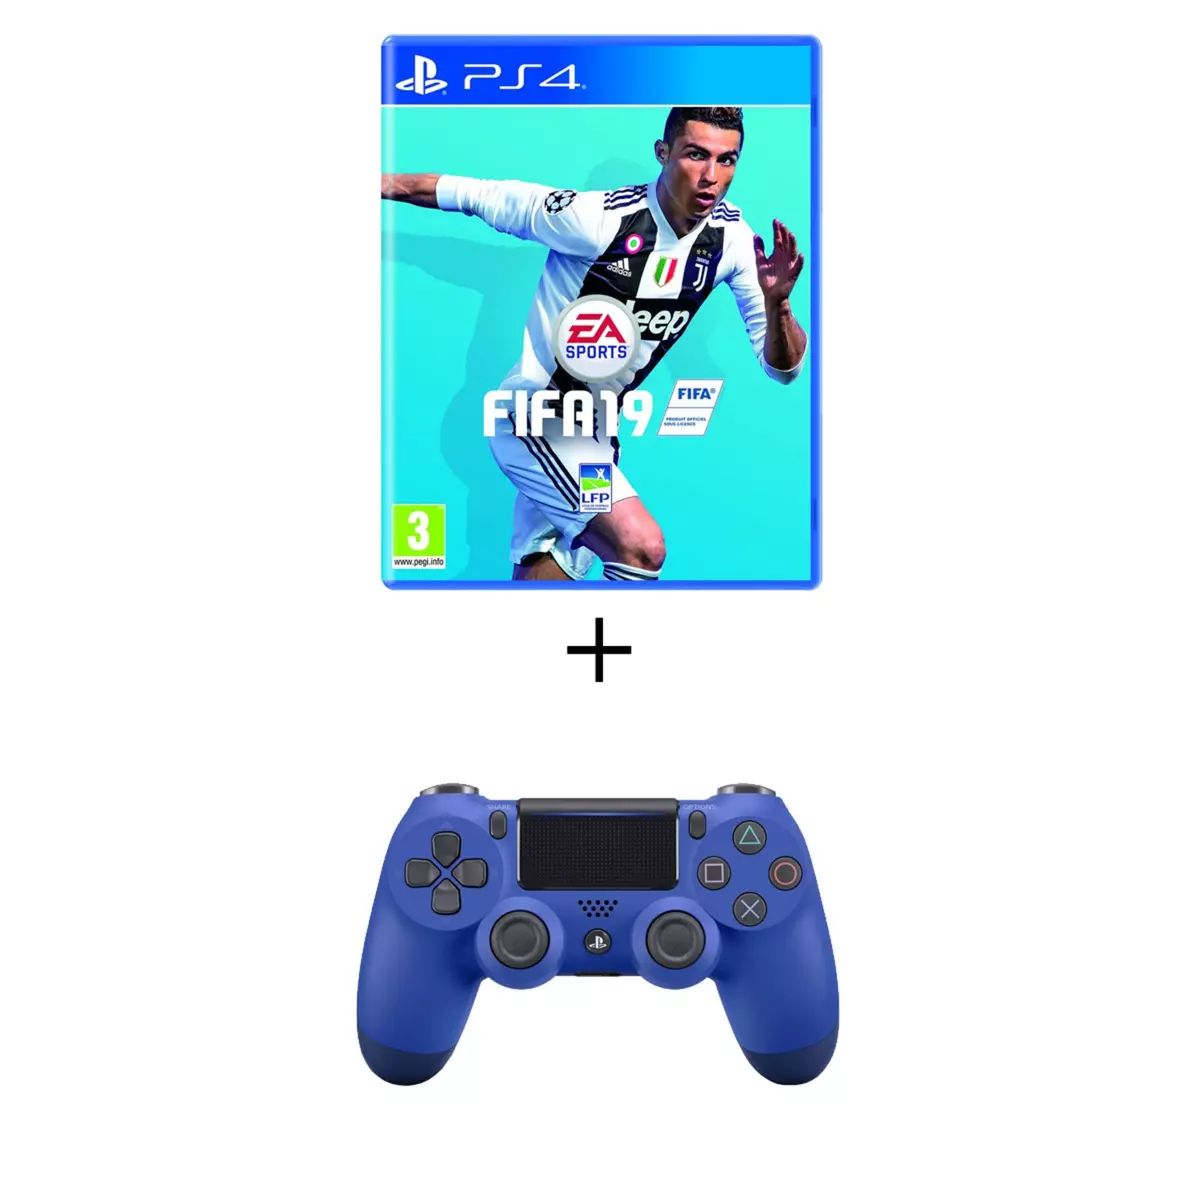 FIFA 19 PS4 + Manette PS4 Dualshock 4 Bleue